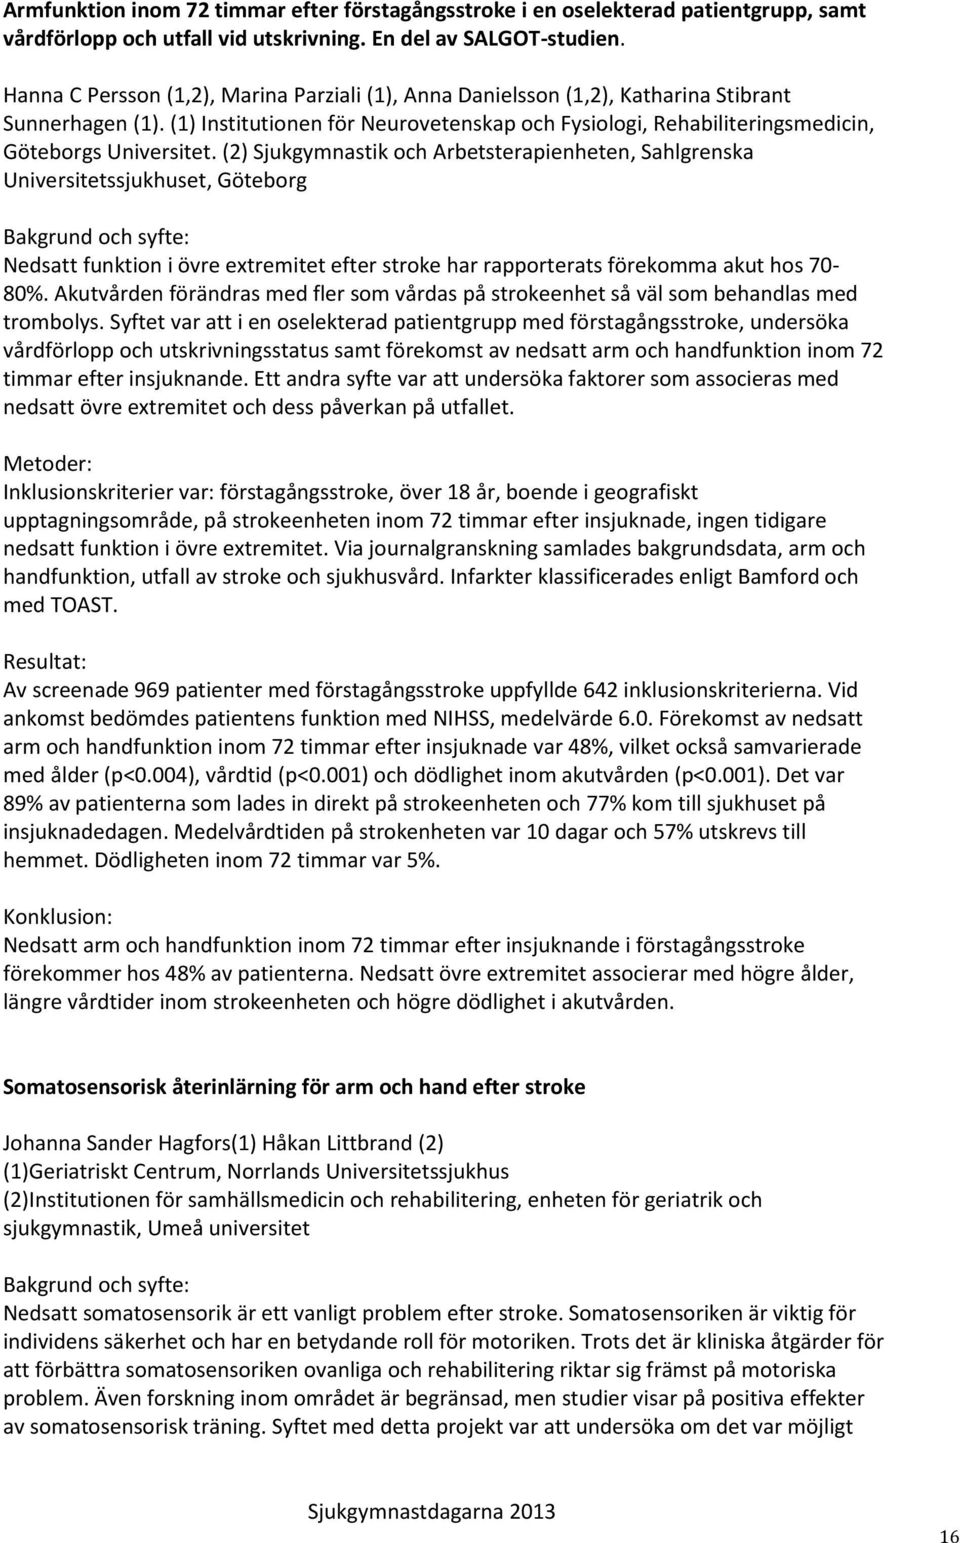 (1) Institutionen för Neurovetenskap och Fysiologi, Rehabiliteringsmedicin, Göteborgs Universitet.